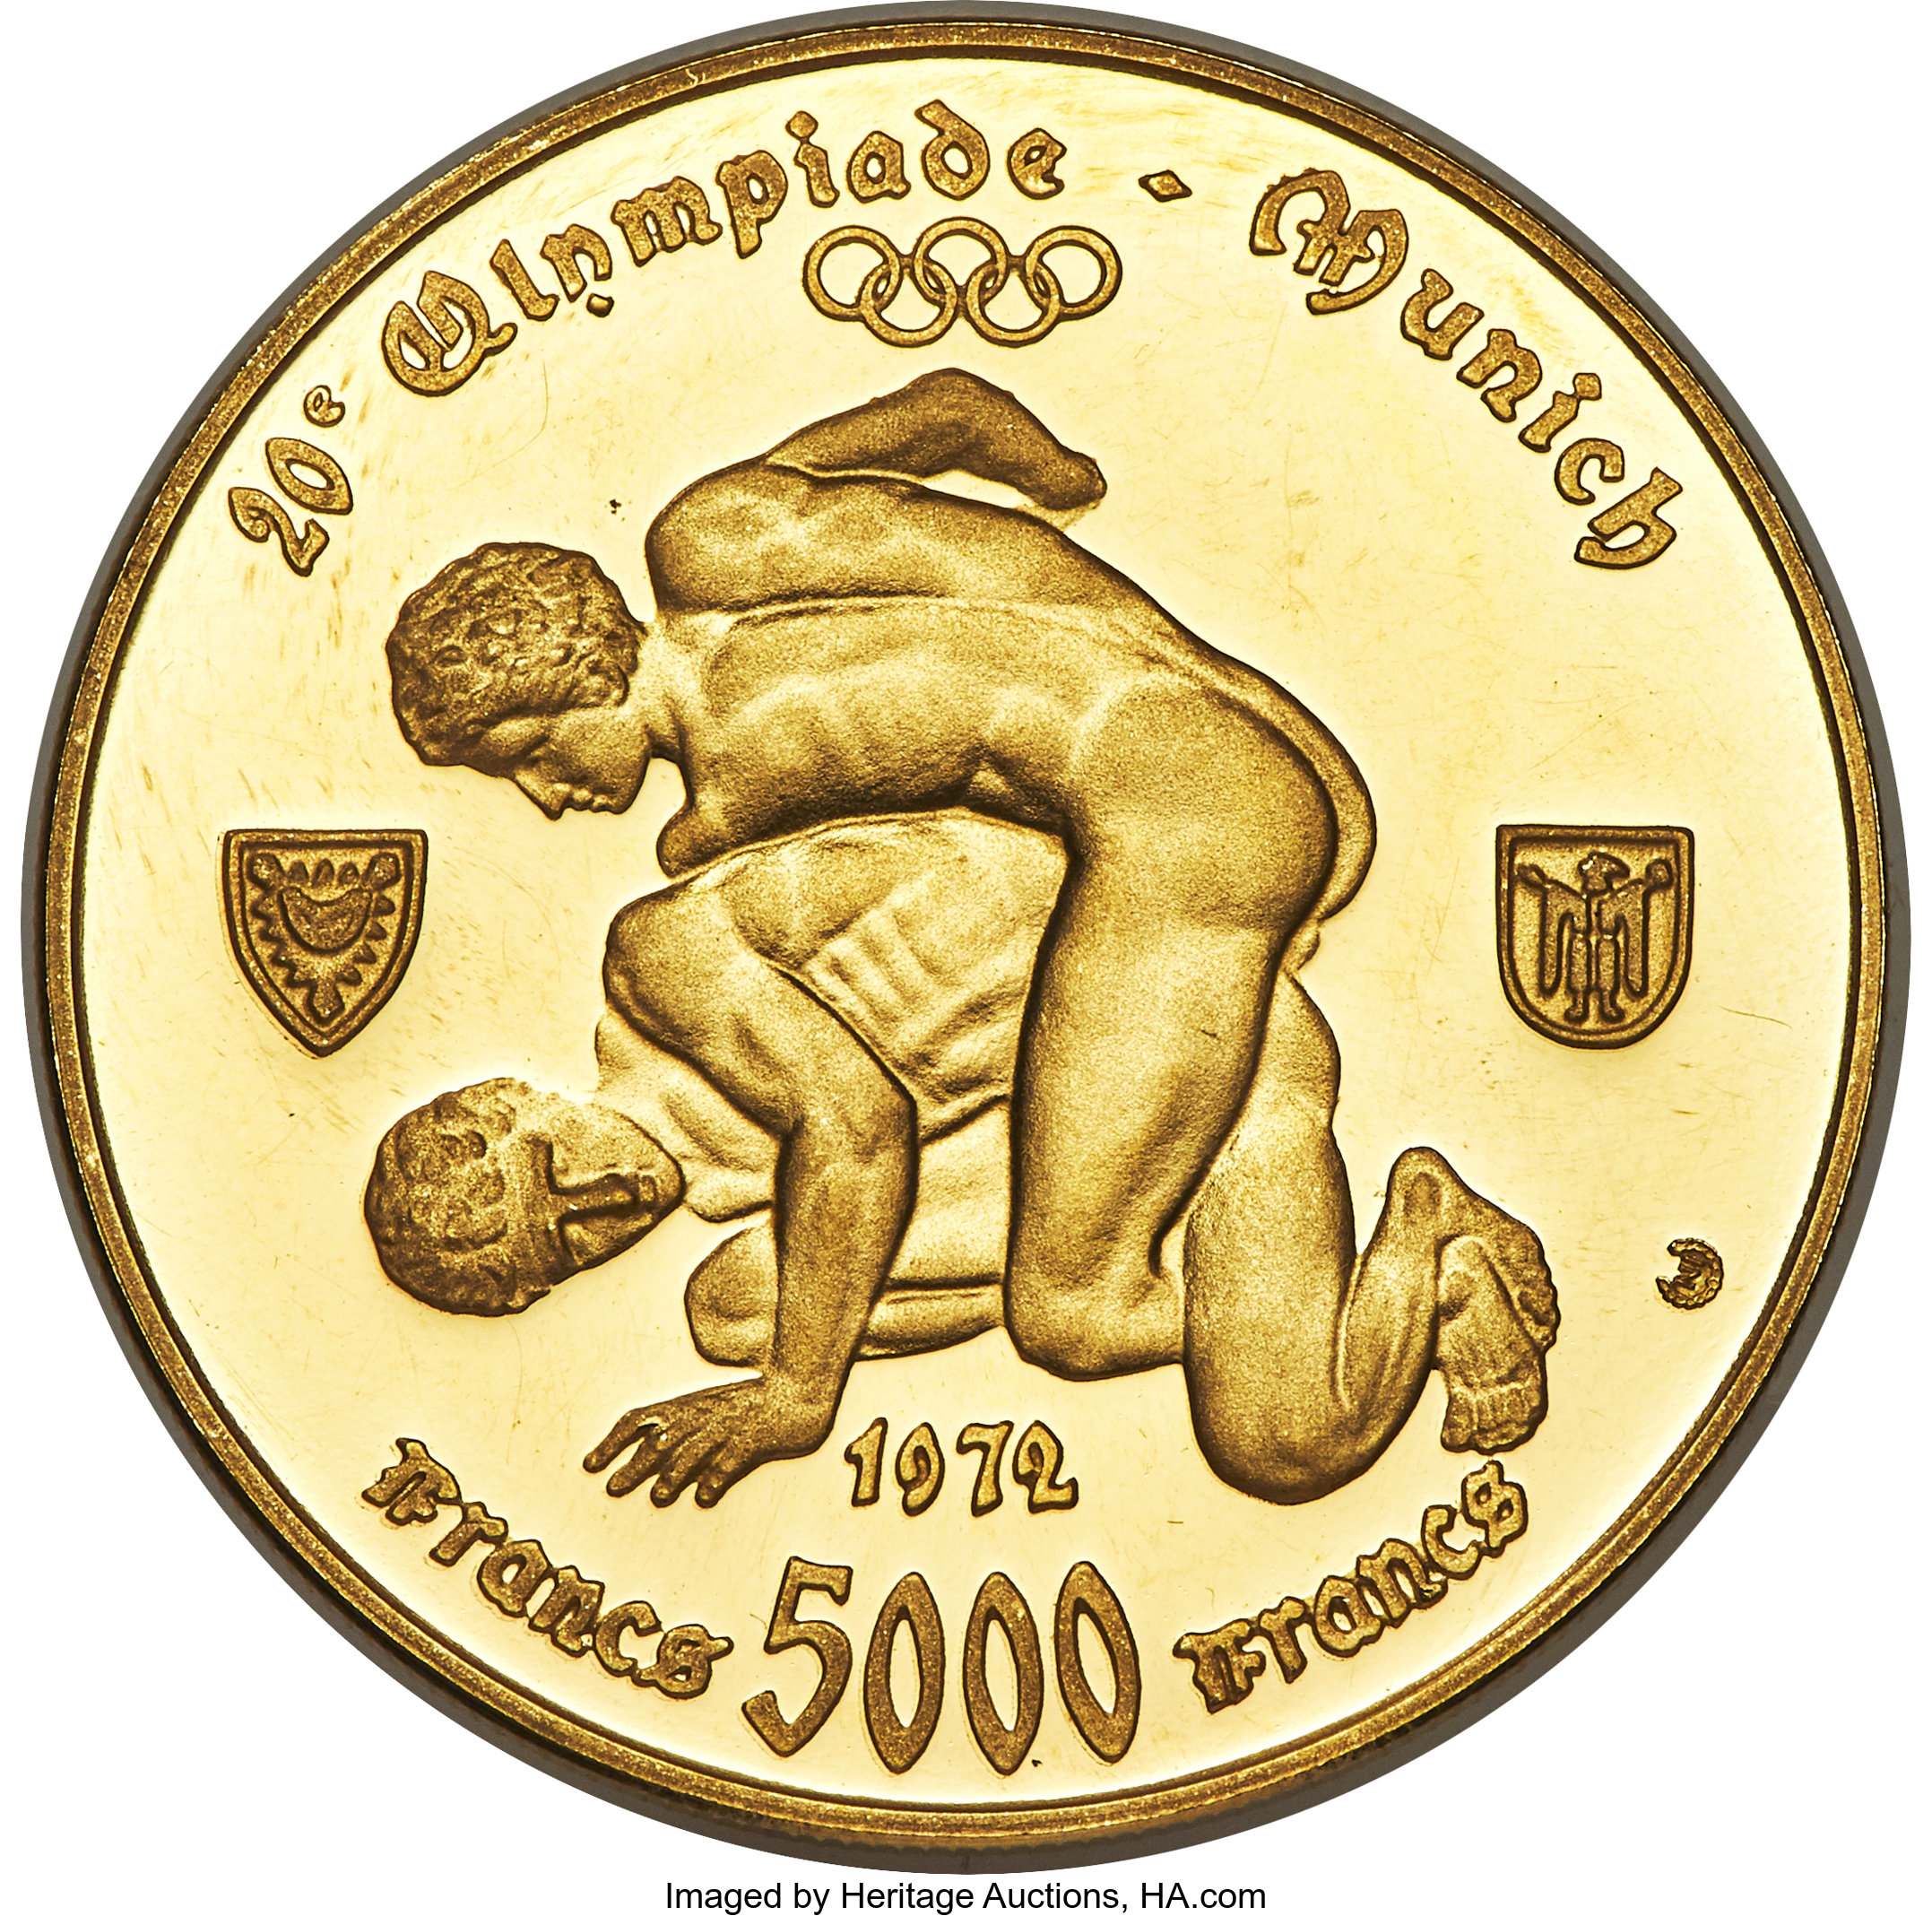 5000 francs - Indépendance - 10 years